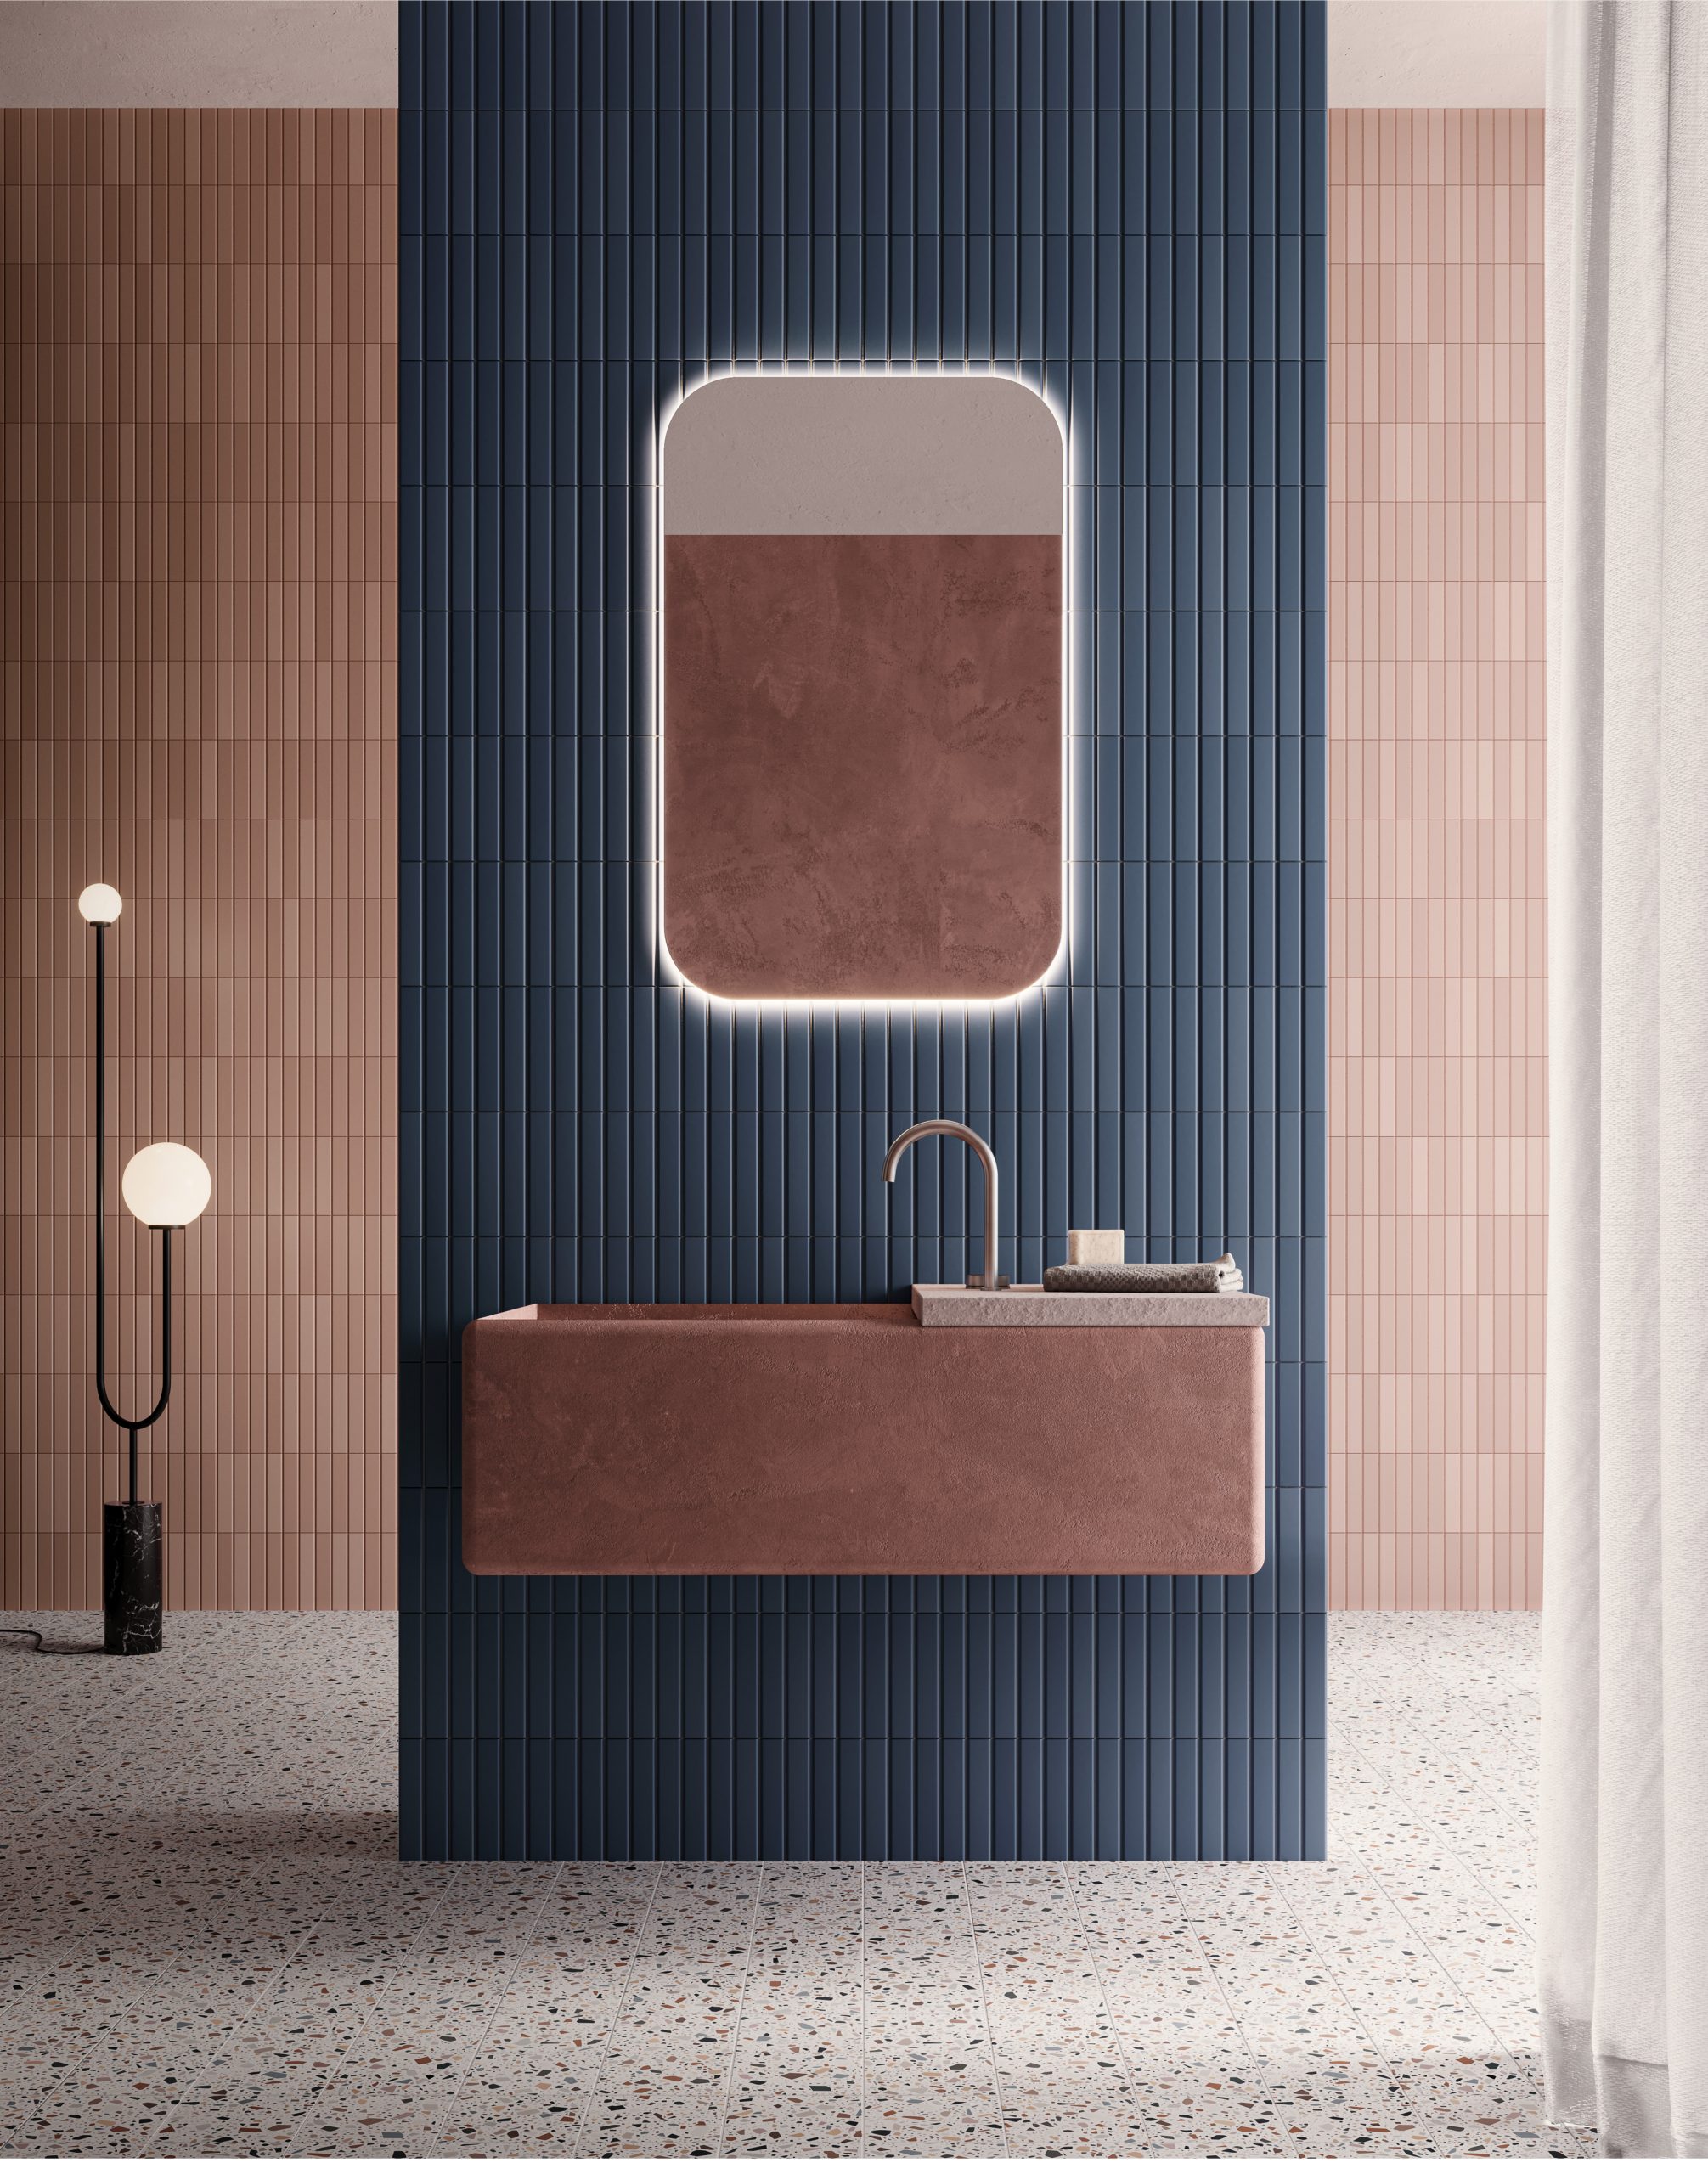 Carrelage uni rose et bleu dans une salle de bain aux murs bleu marine et rose, sol terrazzo, meuble vasque marron, miroir lumineux